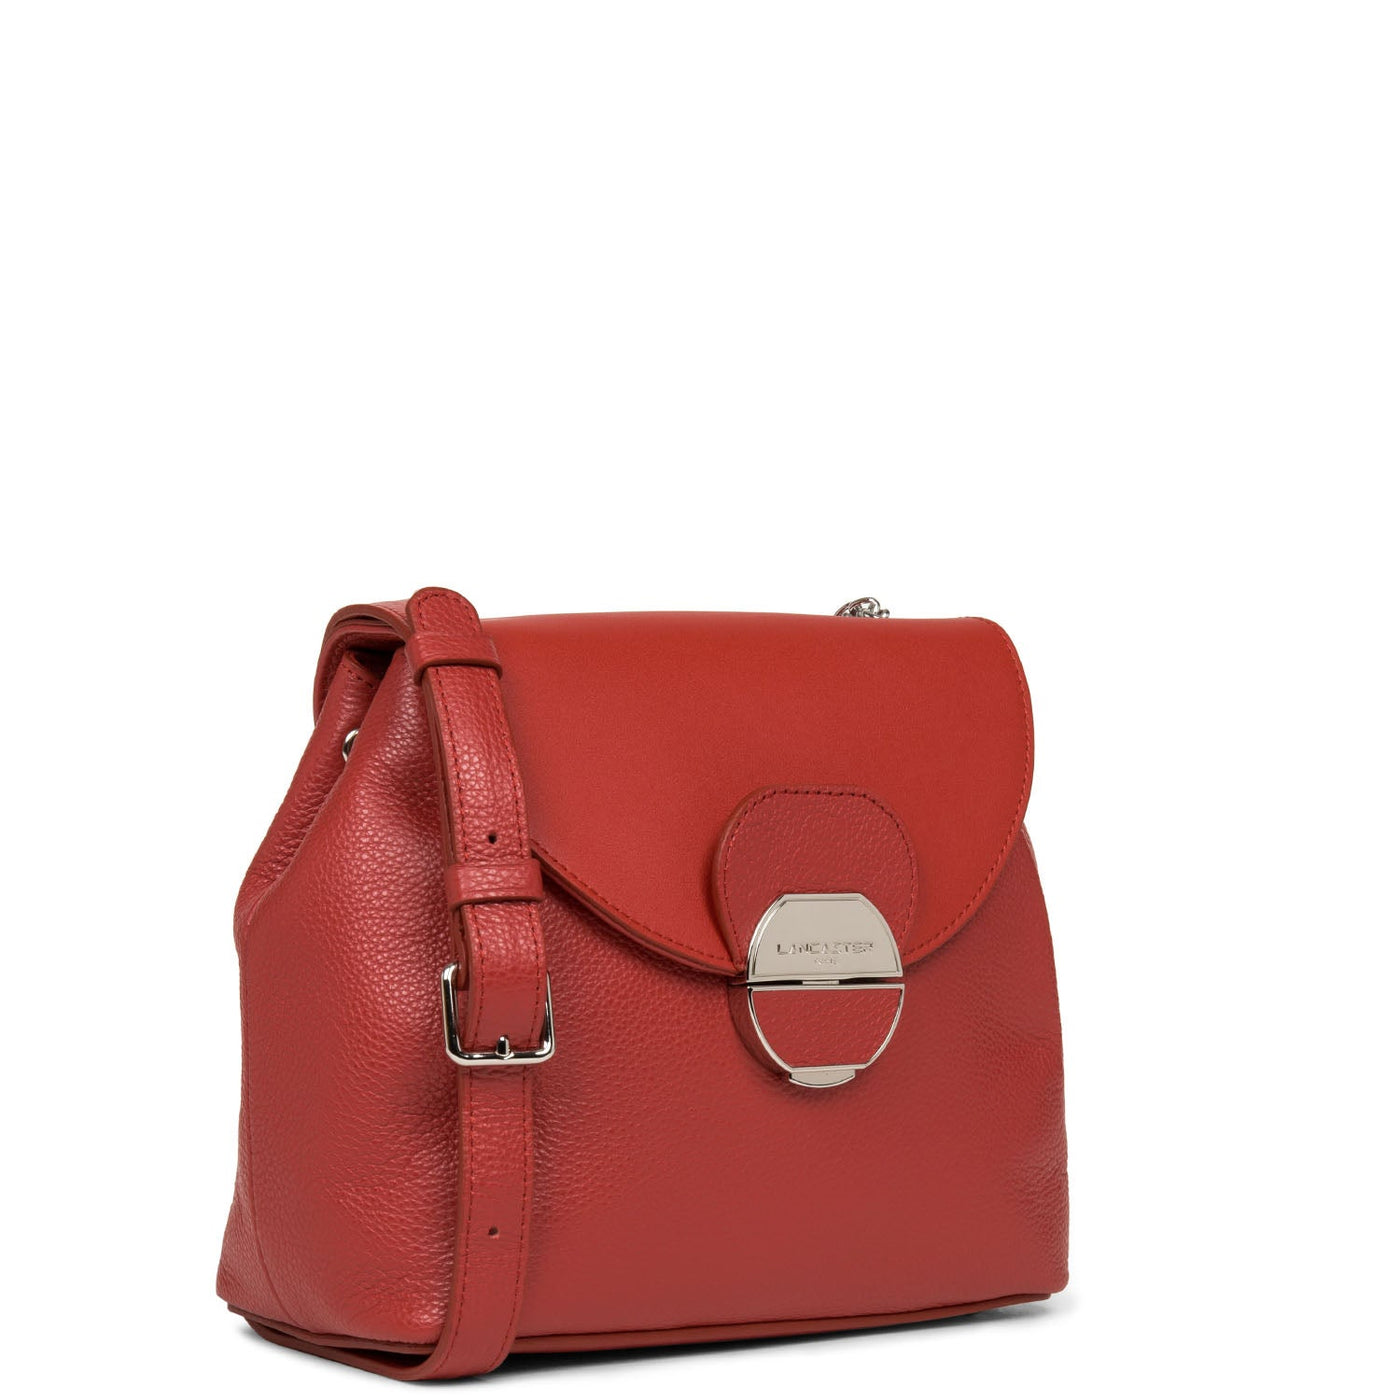 crossbody bag - pia #couleur_rouge